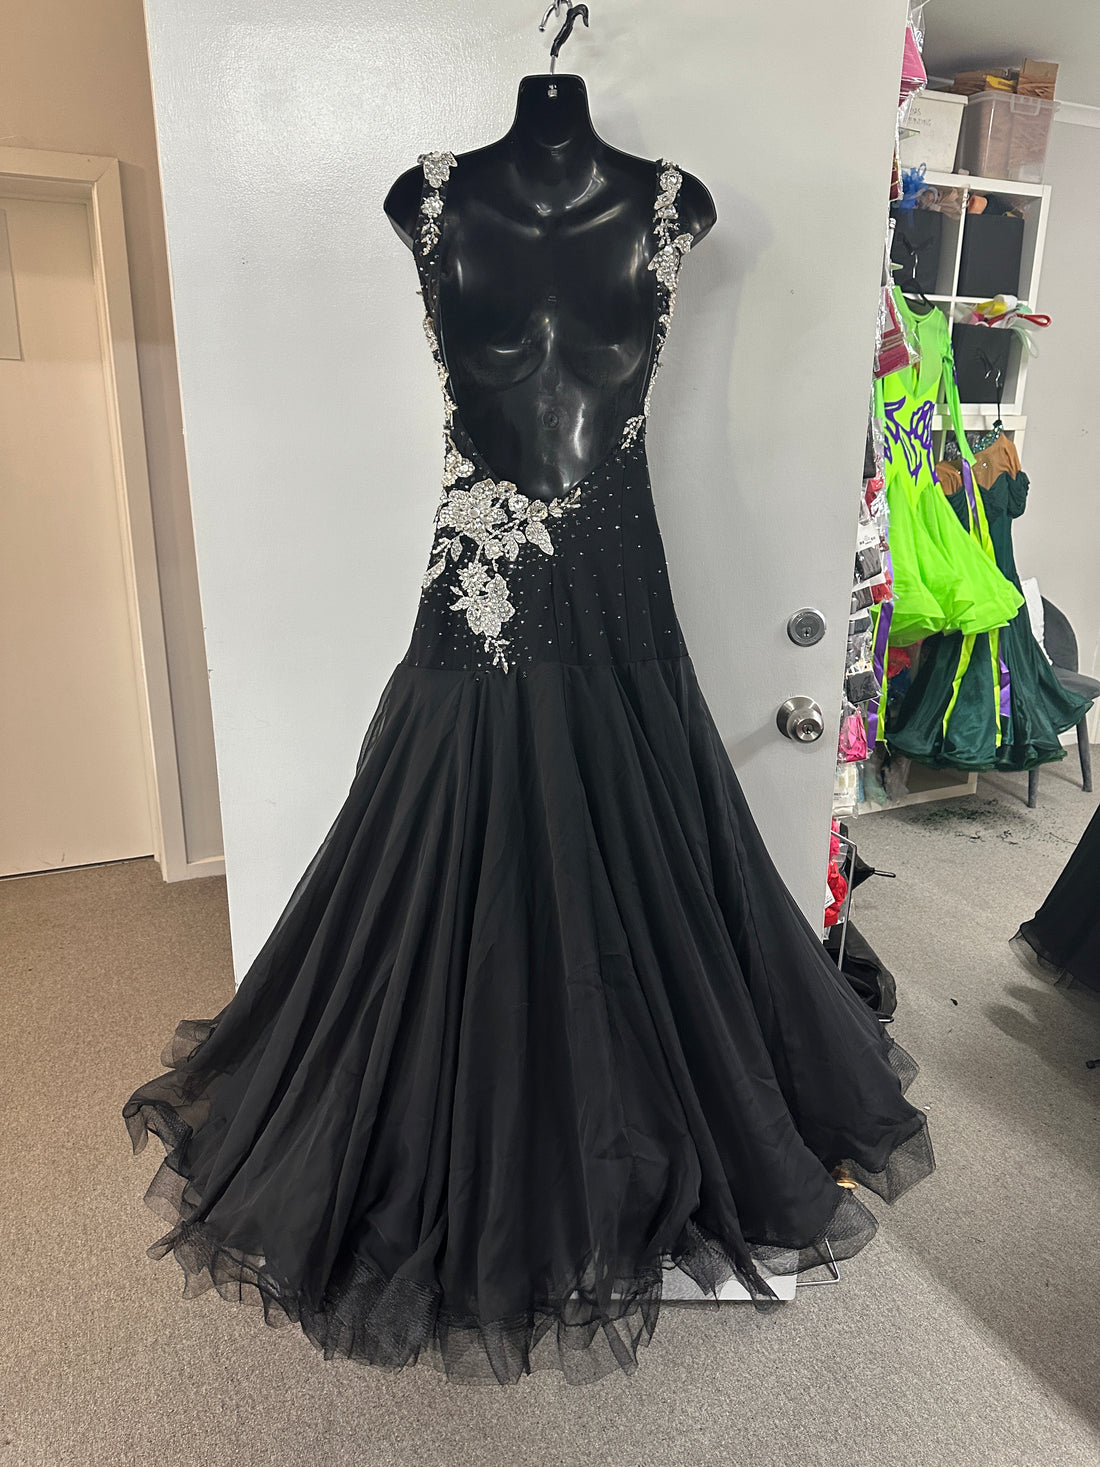 Pre Loved Black & Sliver Lace Ballroom Dress (Size 8-10)